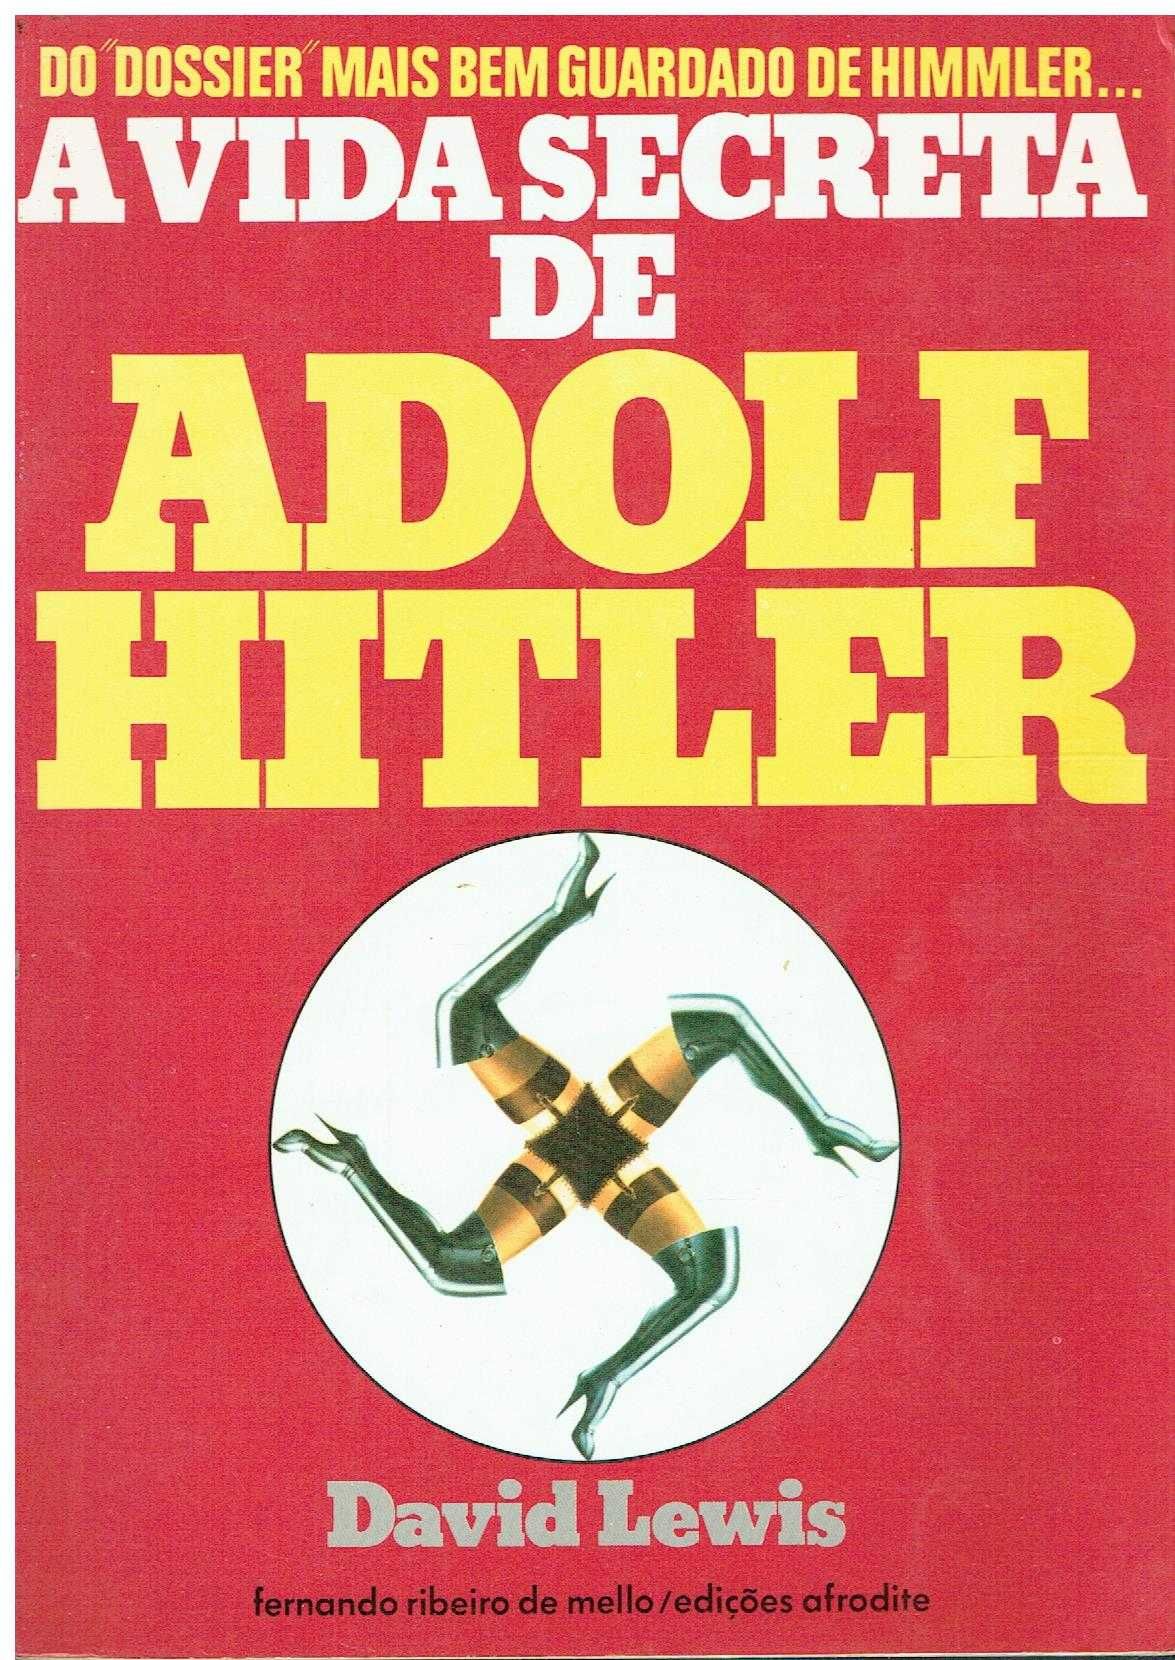 5292
	
A vida secreta de Adolf Hitler - edição Afrodite
de David Lewis